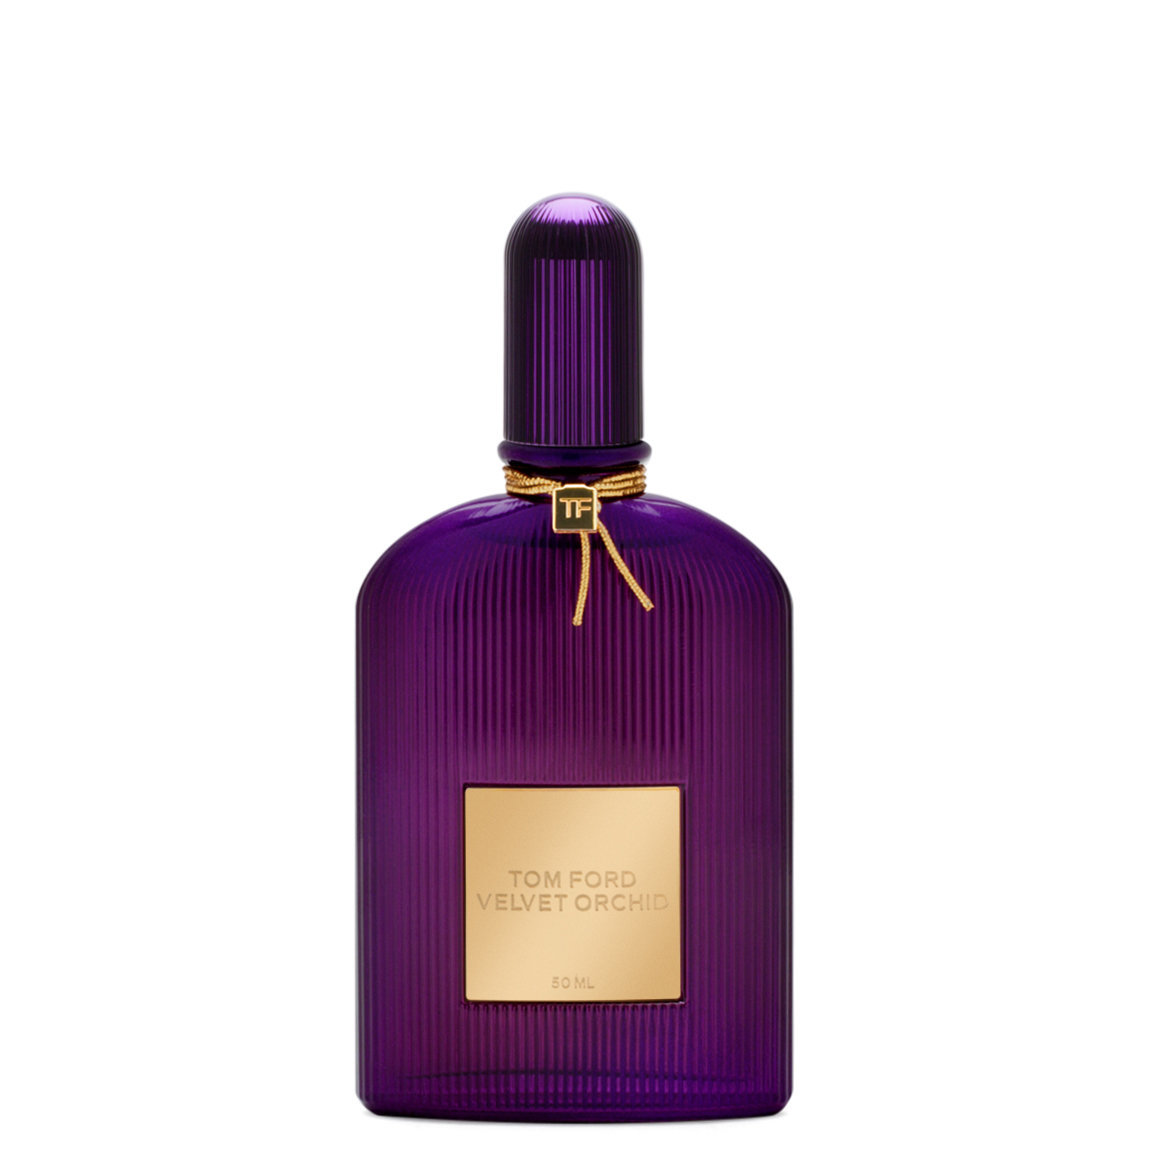 TOM FORD Velvet Orchid 50 ml | Beautylish